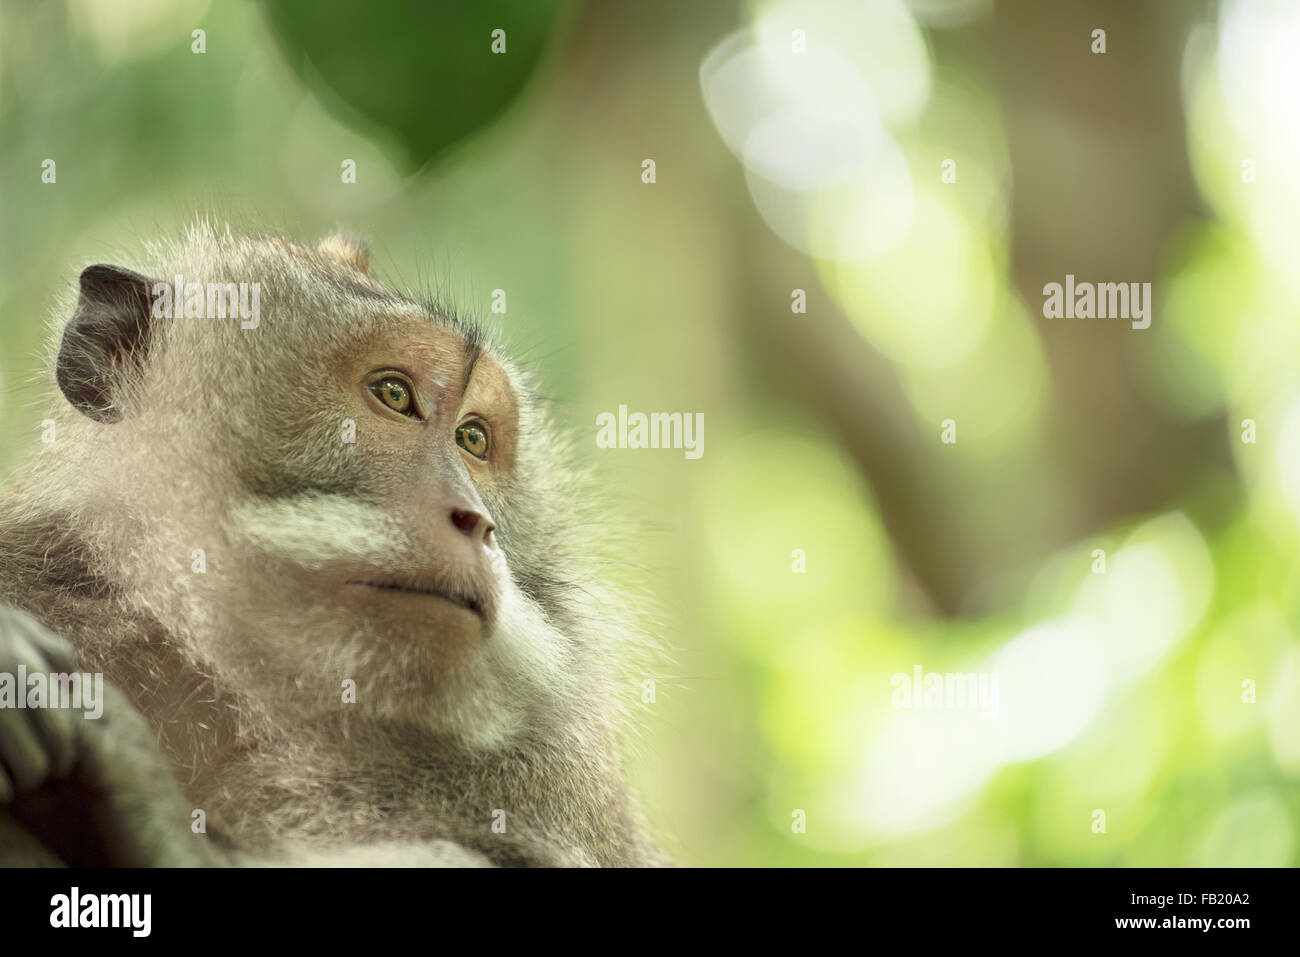 Gesicht-Porträt von wilden Affen im natürlichen Lebensraum. Wildlife Conservation und Tier Rechte Kampagne. Stockfoto